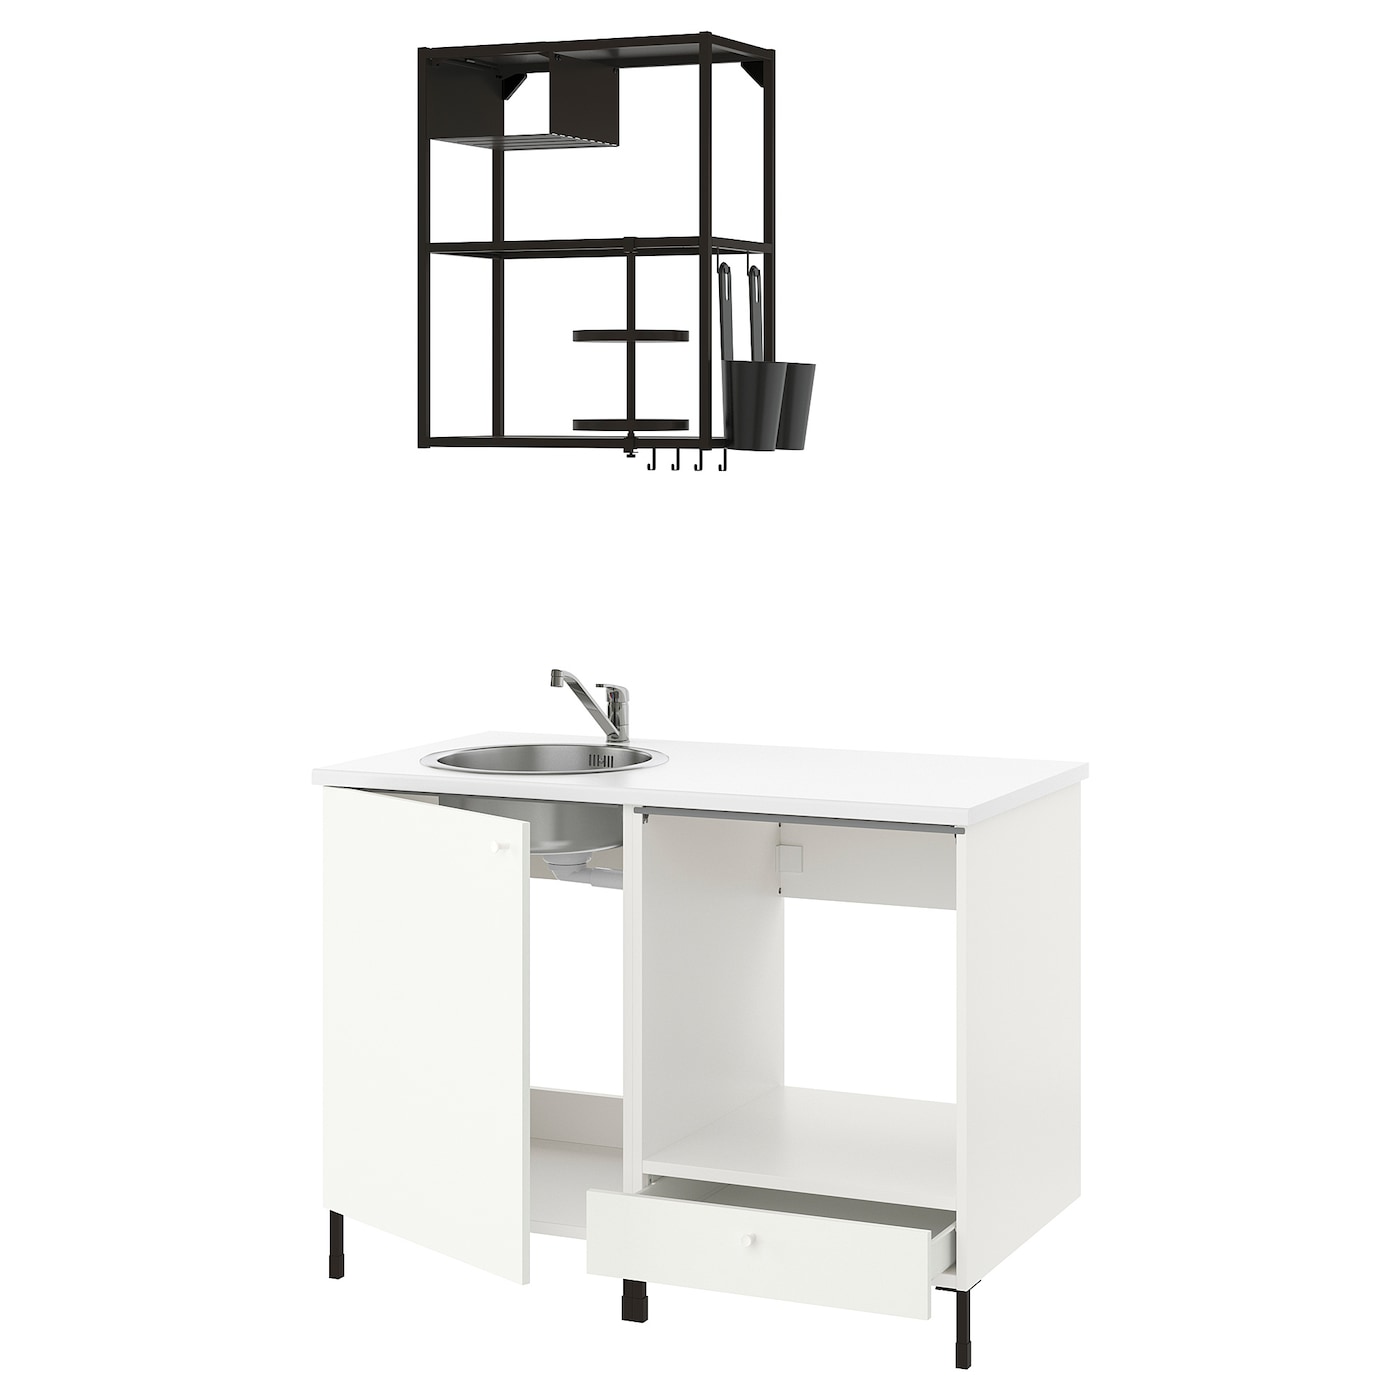 Кухонная комбинация для хранения -  ENHET  IKEA/ ЭНХЕТ ИКЕА, 123x63,5x222 см, белый/черный